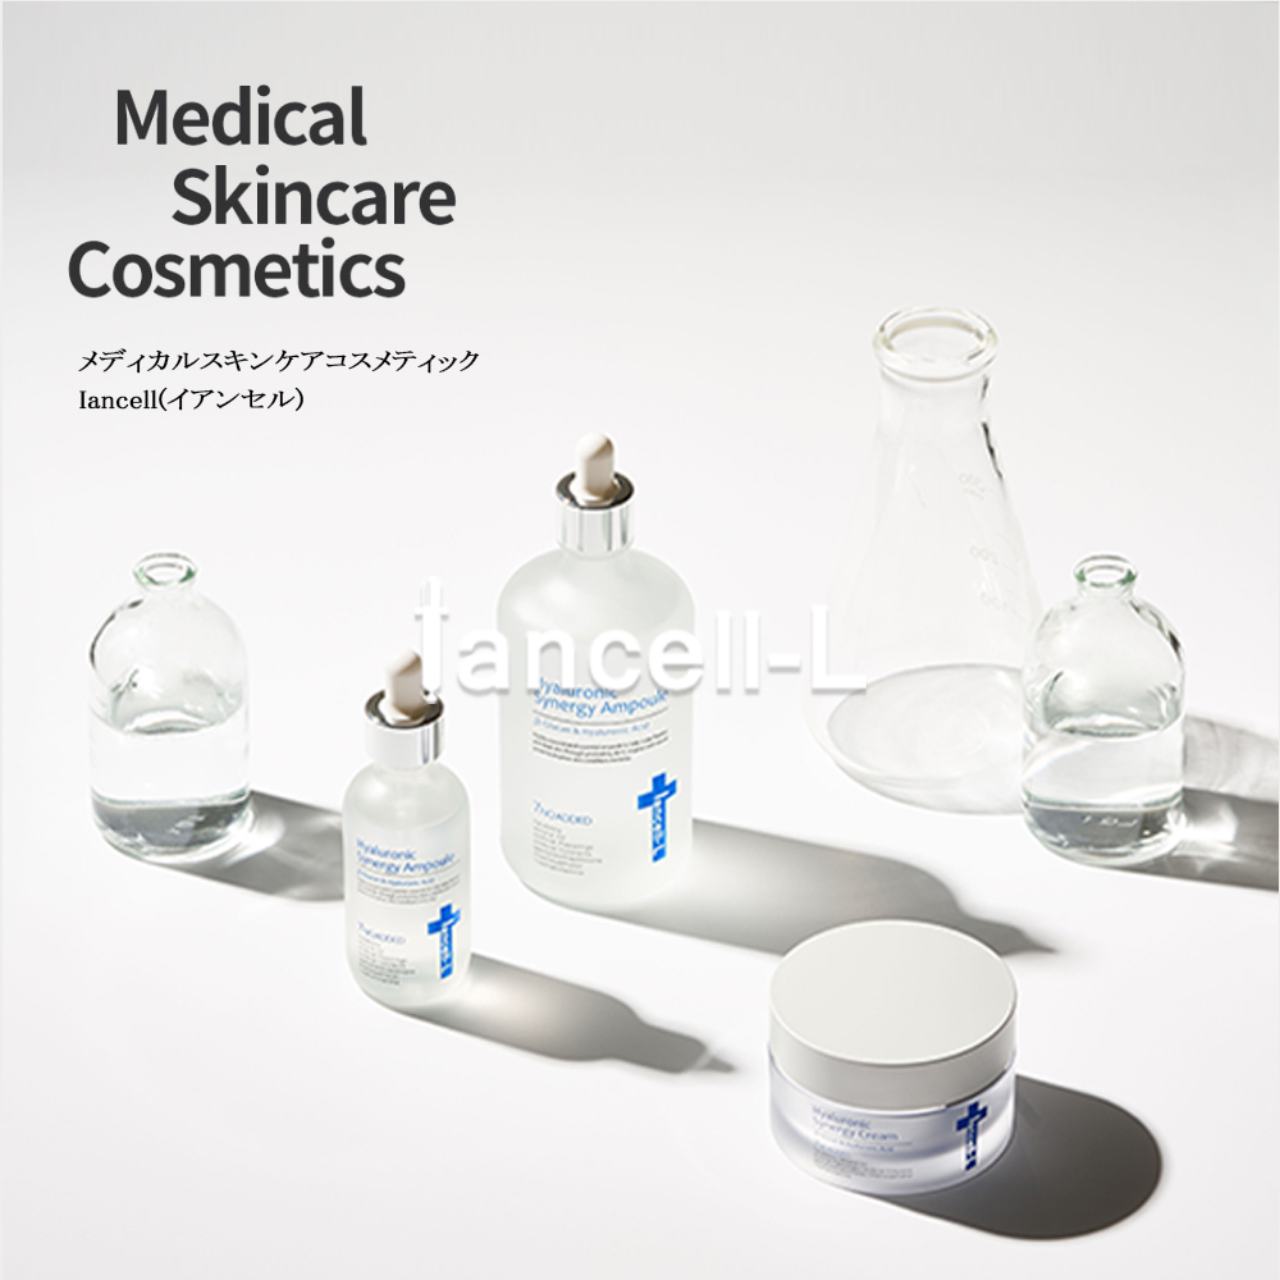 【韓国コスメ】皮膚科が扱うスキンケアブランド「イアンセル」がQoo10公式サイトで販売開始